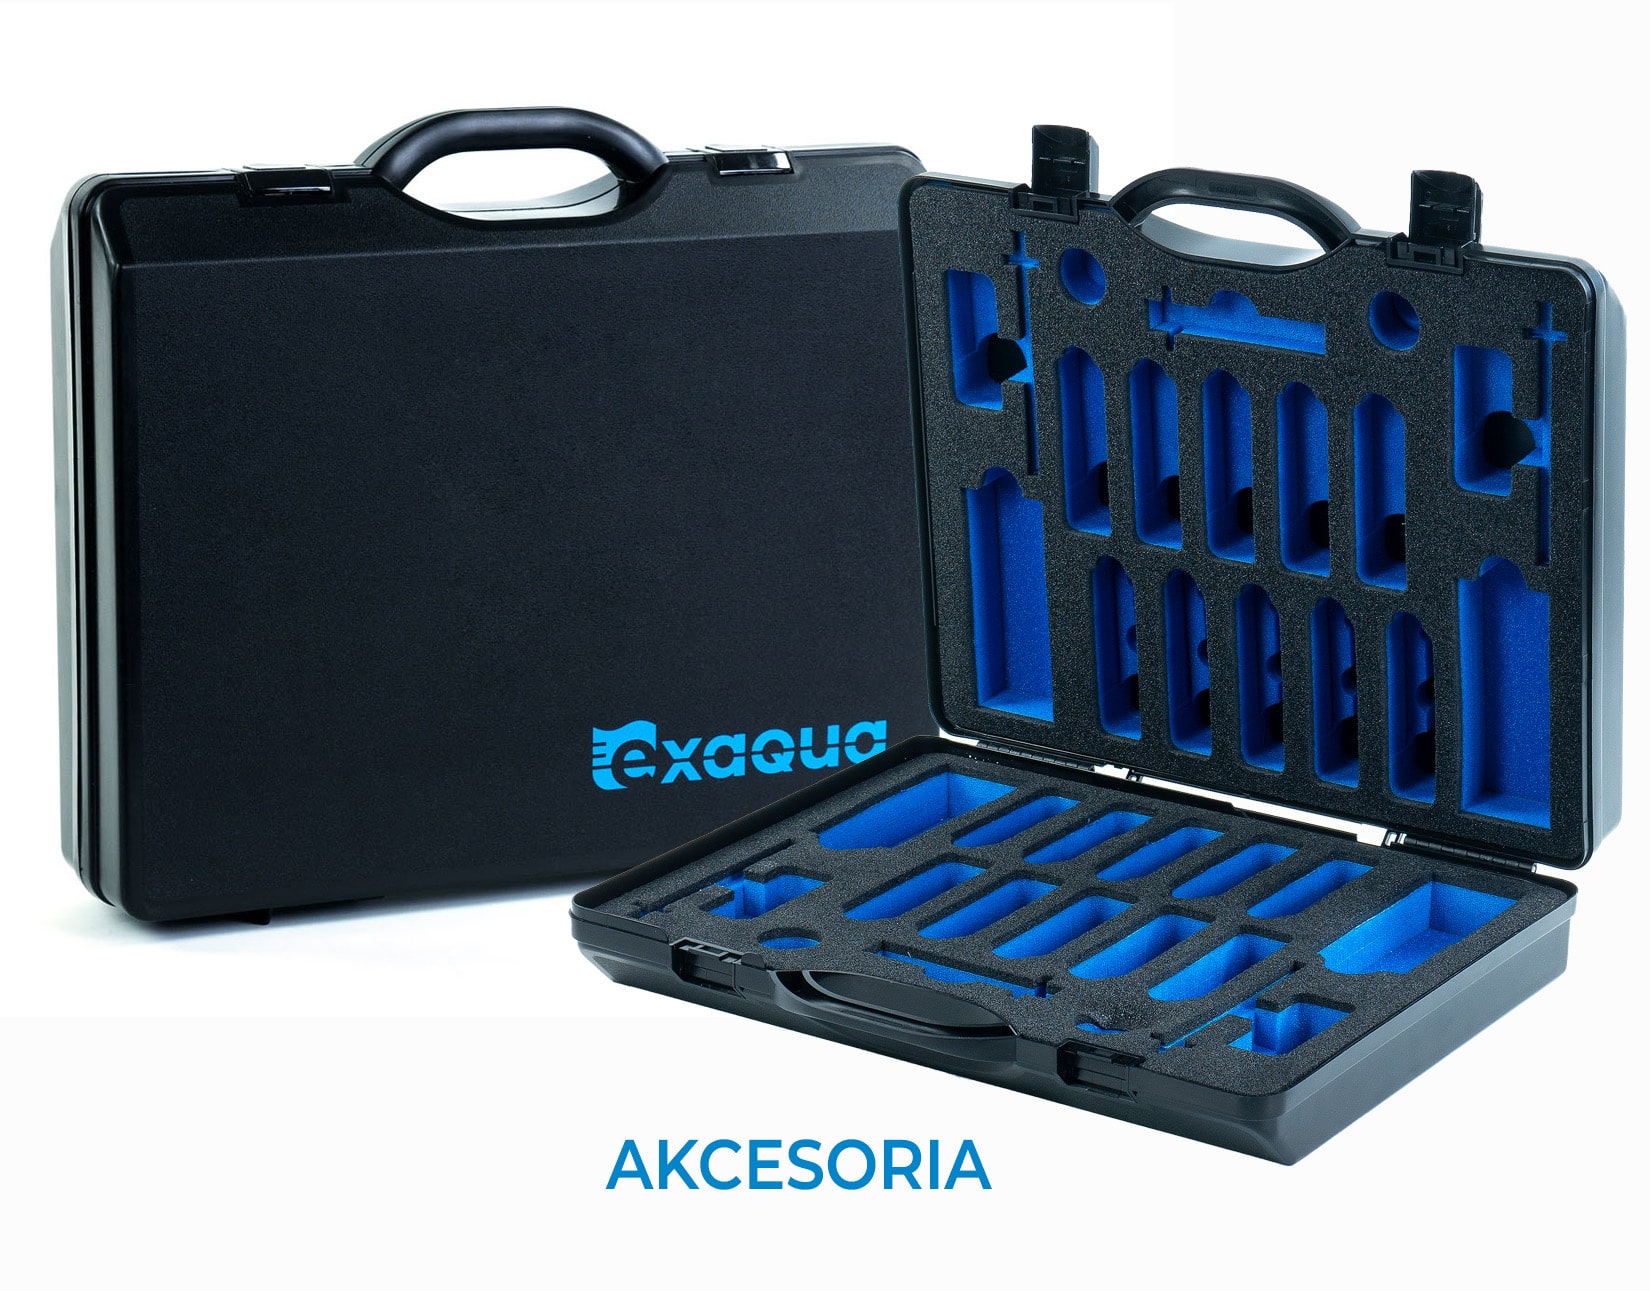 Photometer accessories Exaqua